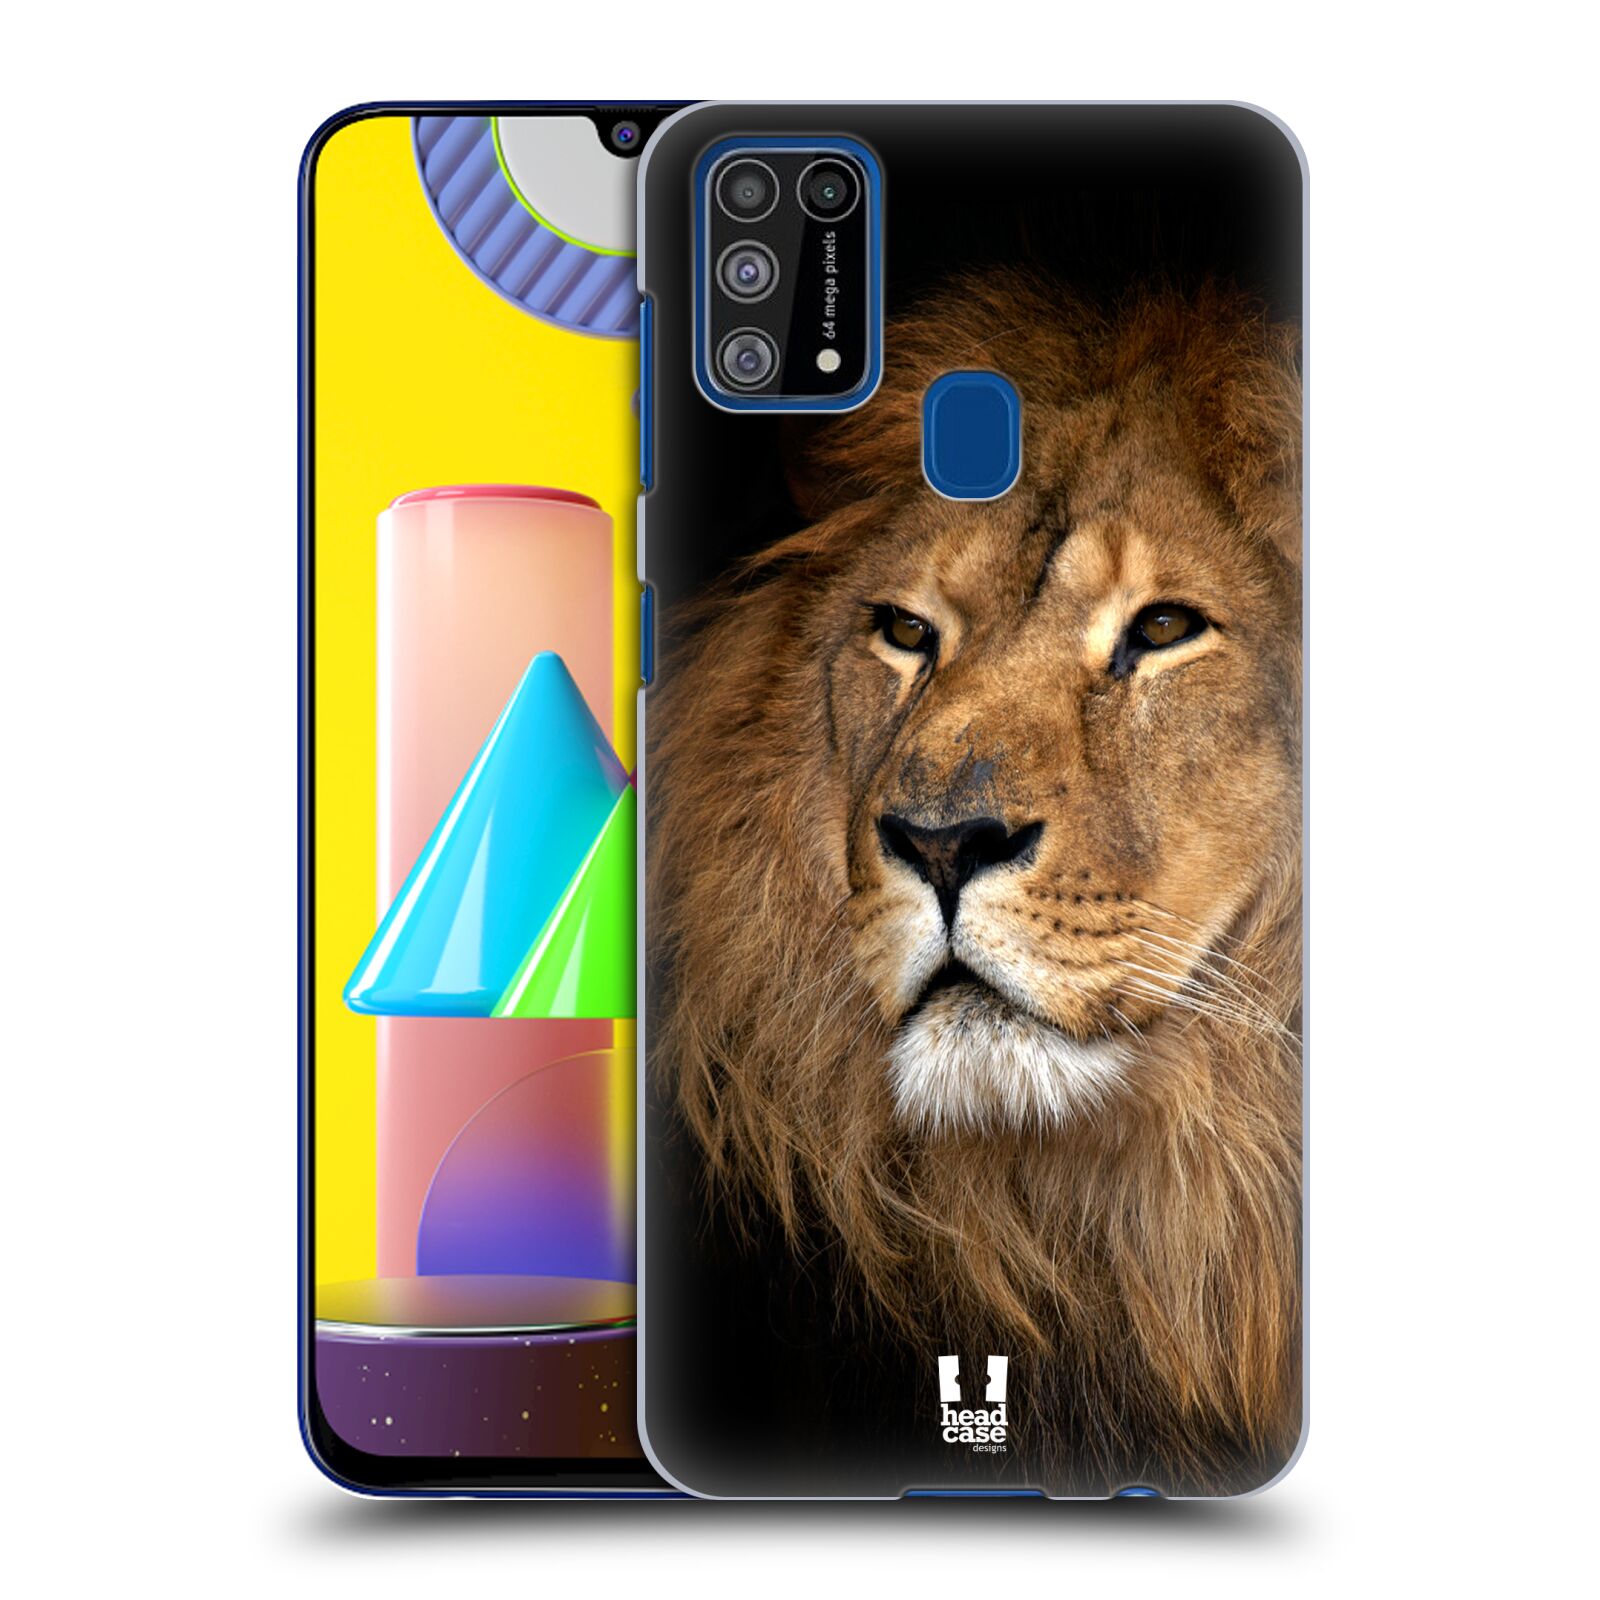 Zadní obal pro mobil Samsung Galaxy M31 - HEAD CASE - Svět zvířat král zvířat Lev